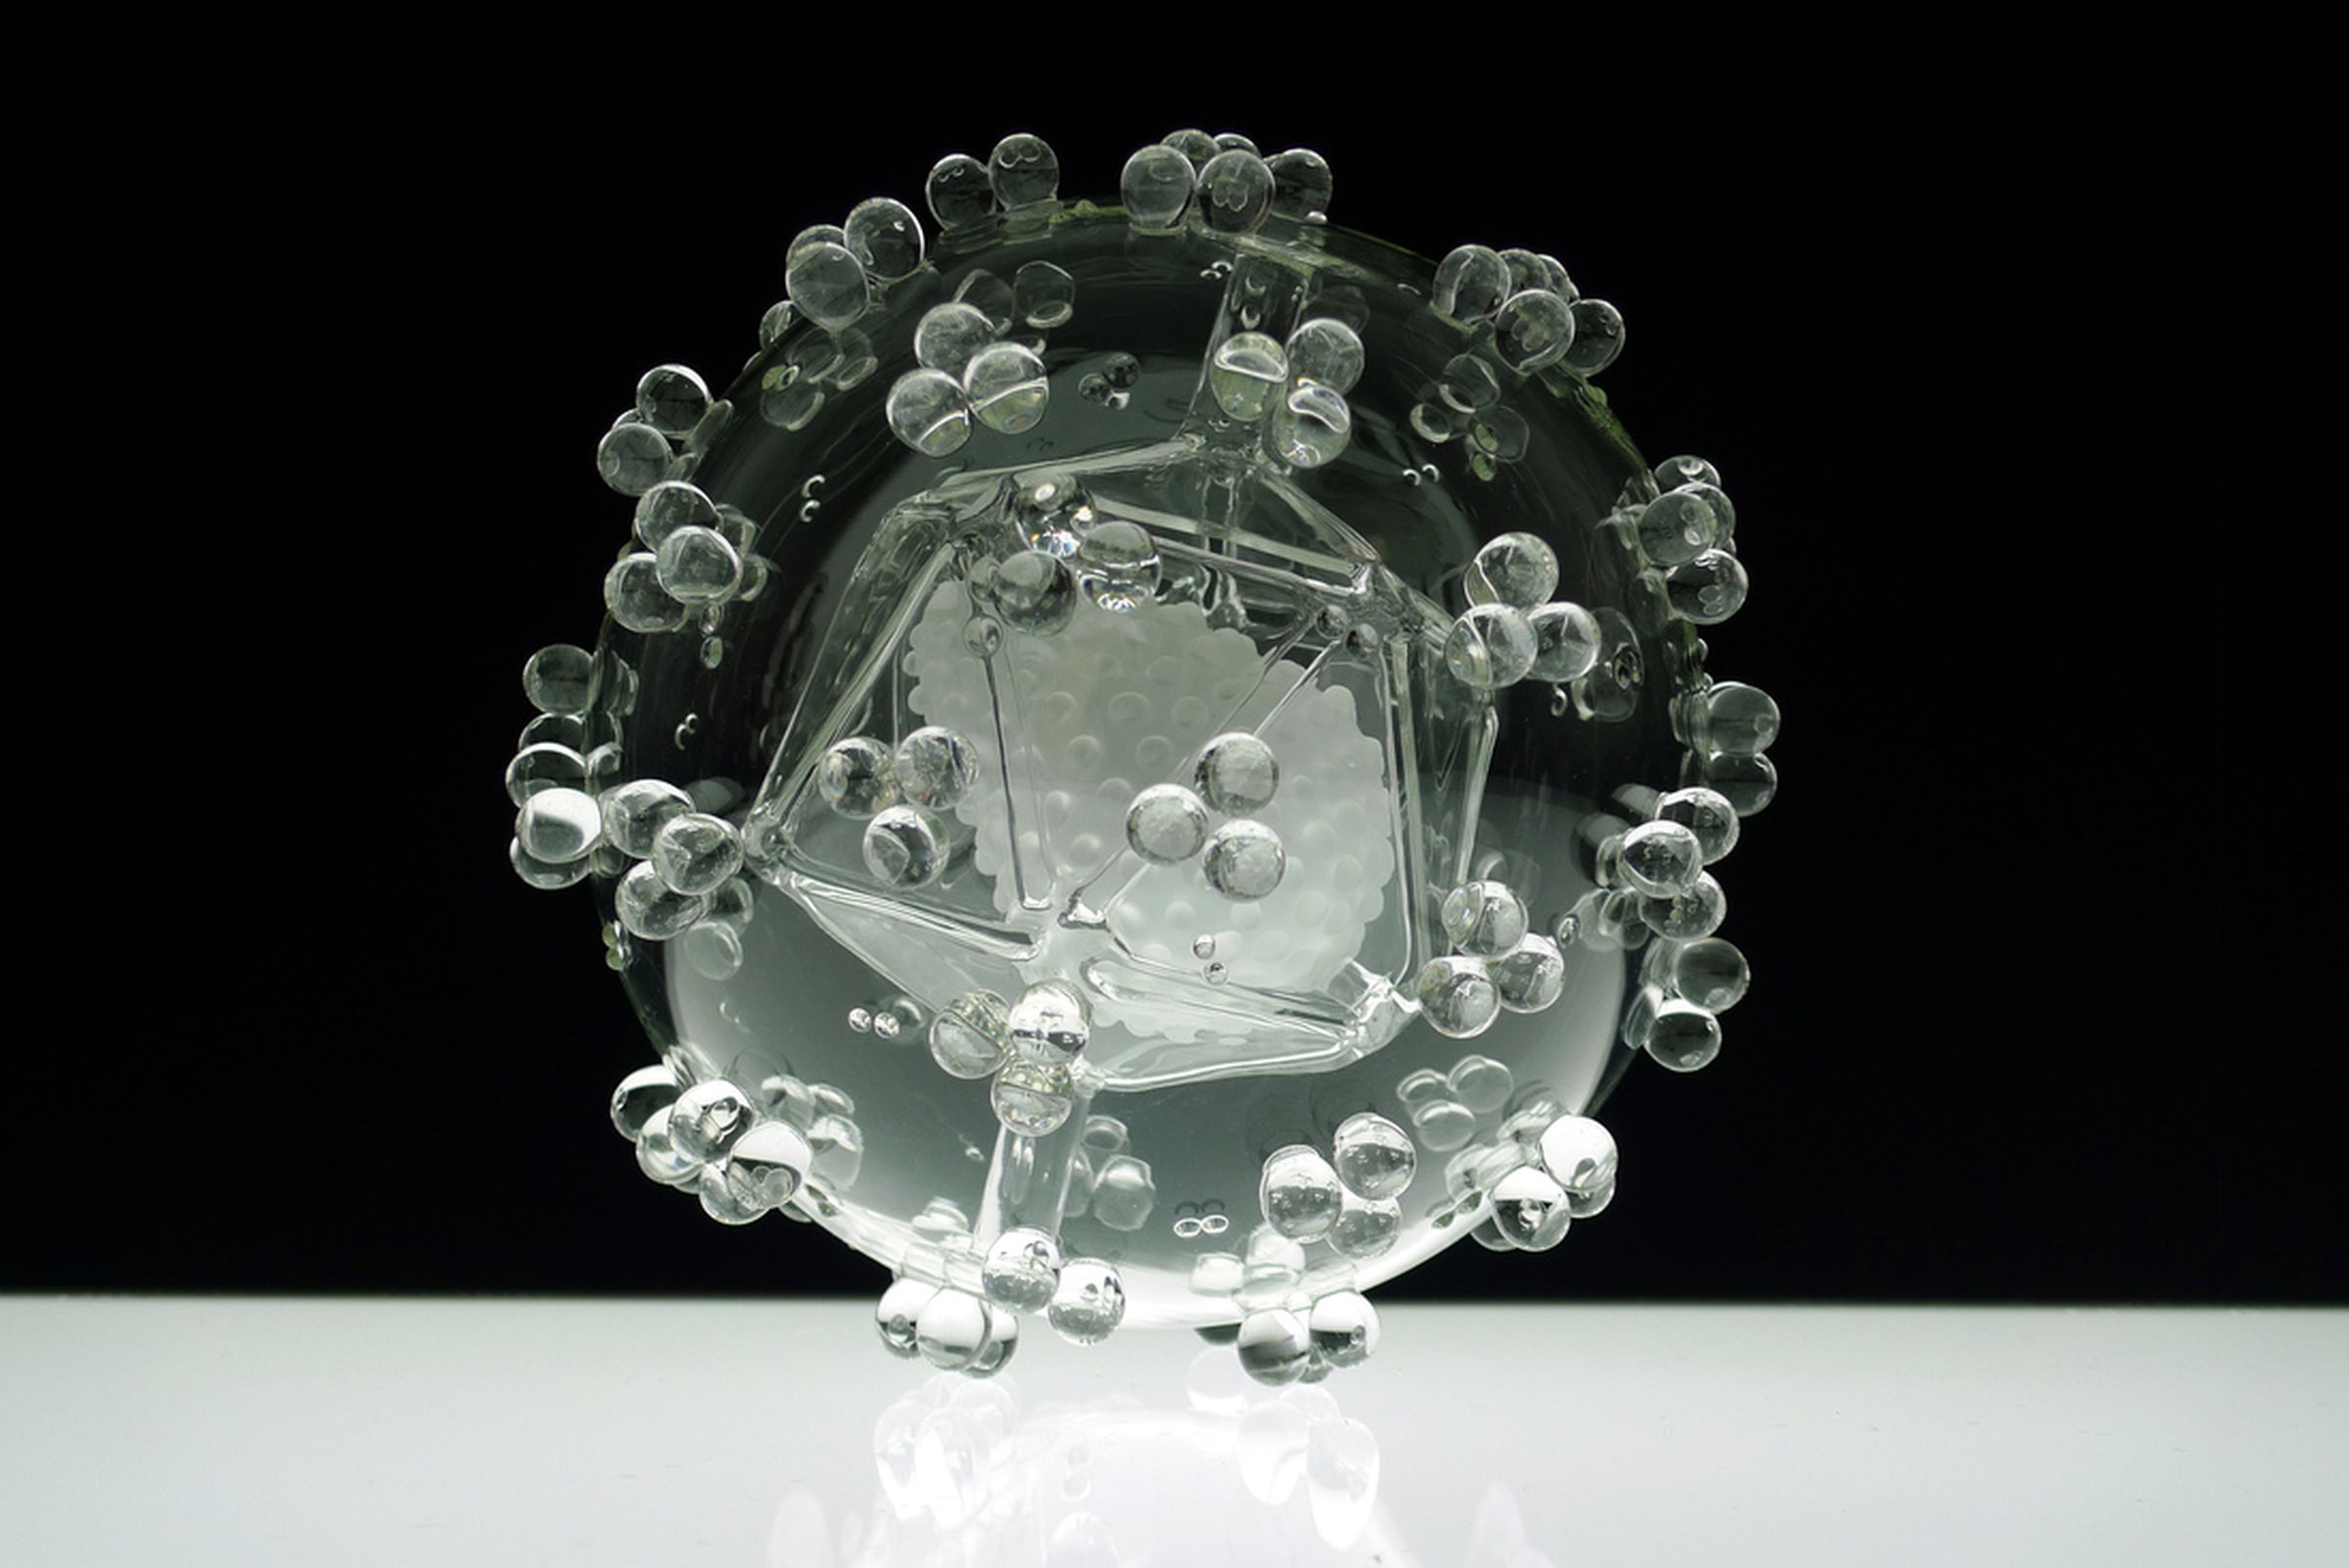 Luke Jerram 'Glass Microbiology' photos